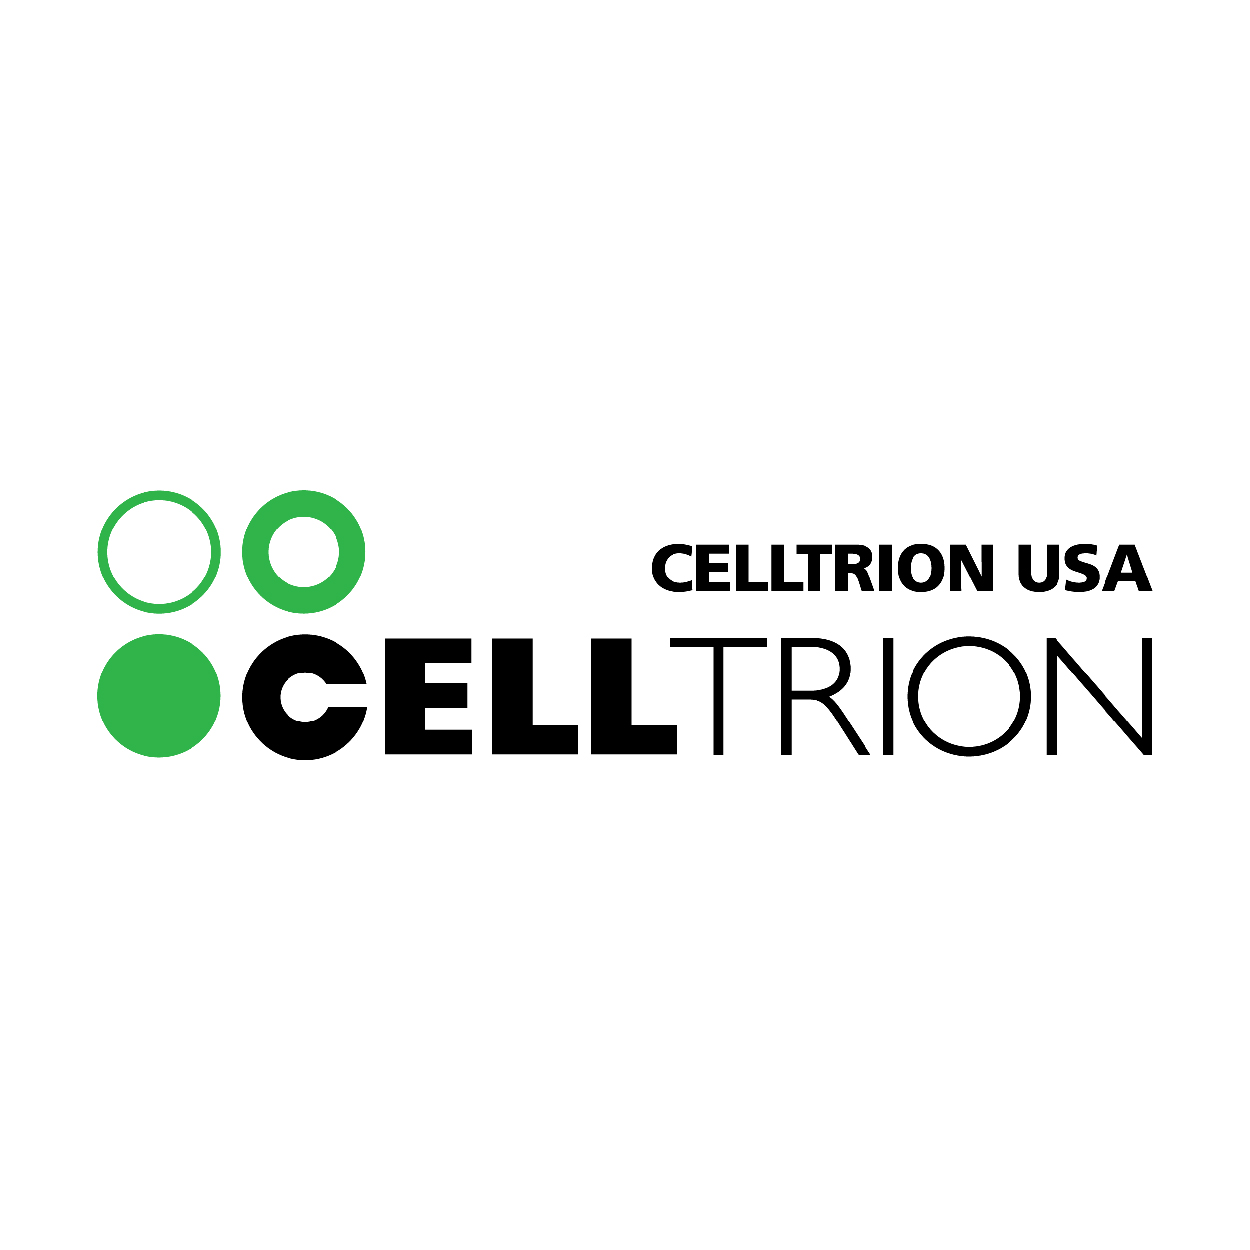 Celltrion USA